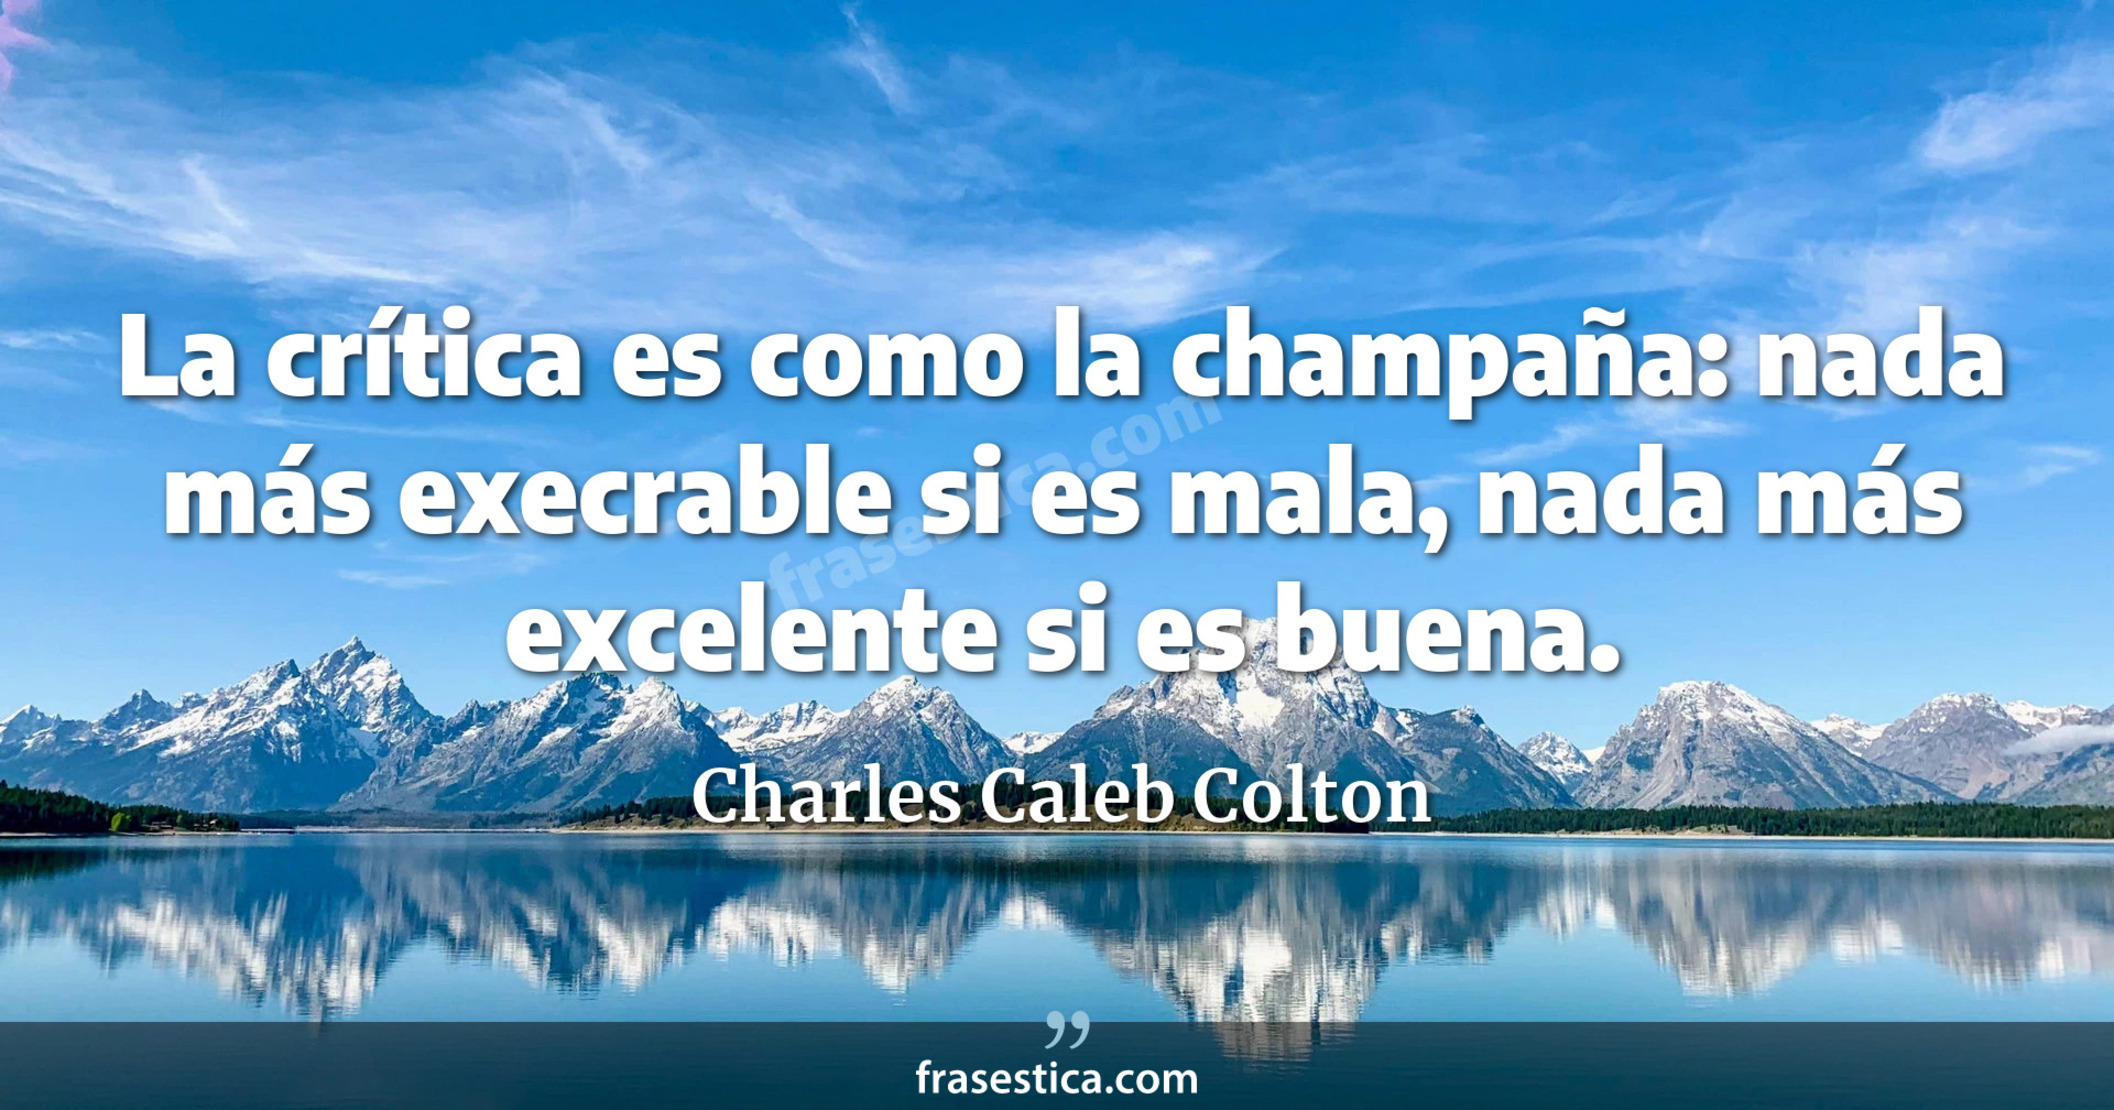 La crítica es como la champaña: nada más execrable si es mala, nada más excelente si es buena. - Charles Caleb Colton